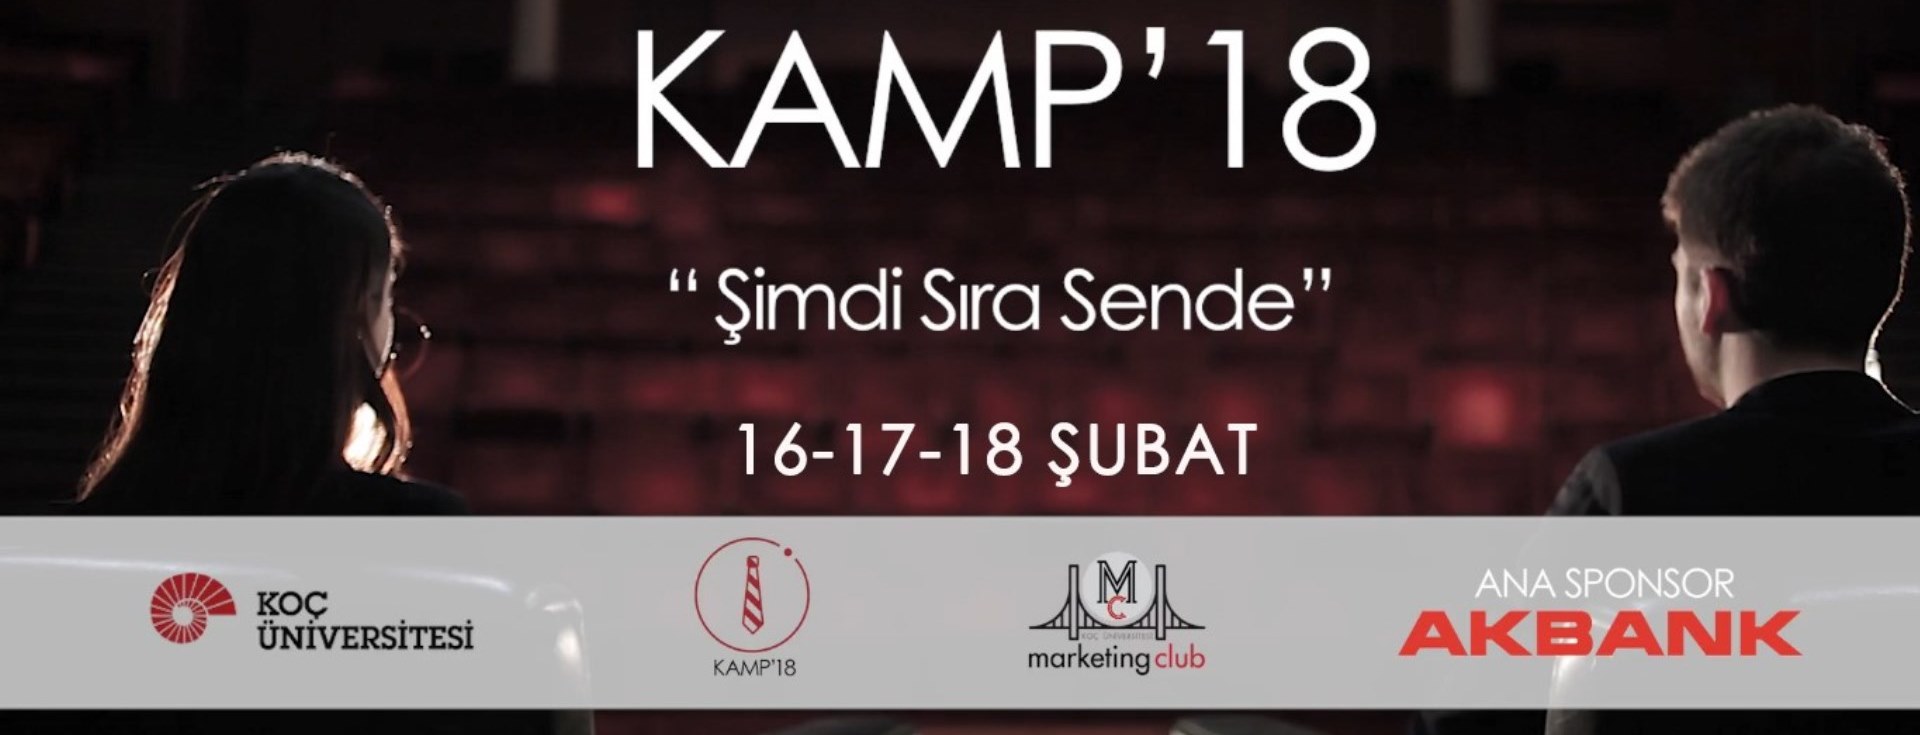 KAMP'18, 16-17-18 Şubat'ta Koç Üniversitesi'nde!